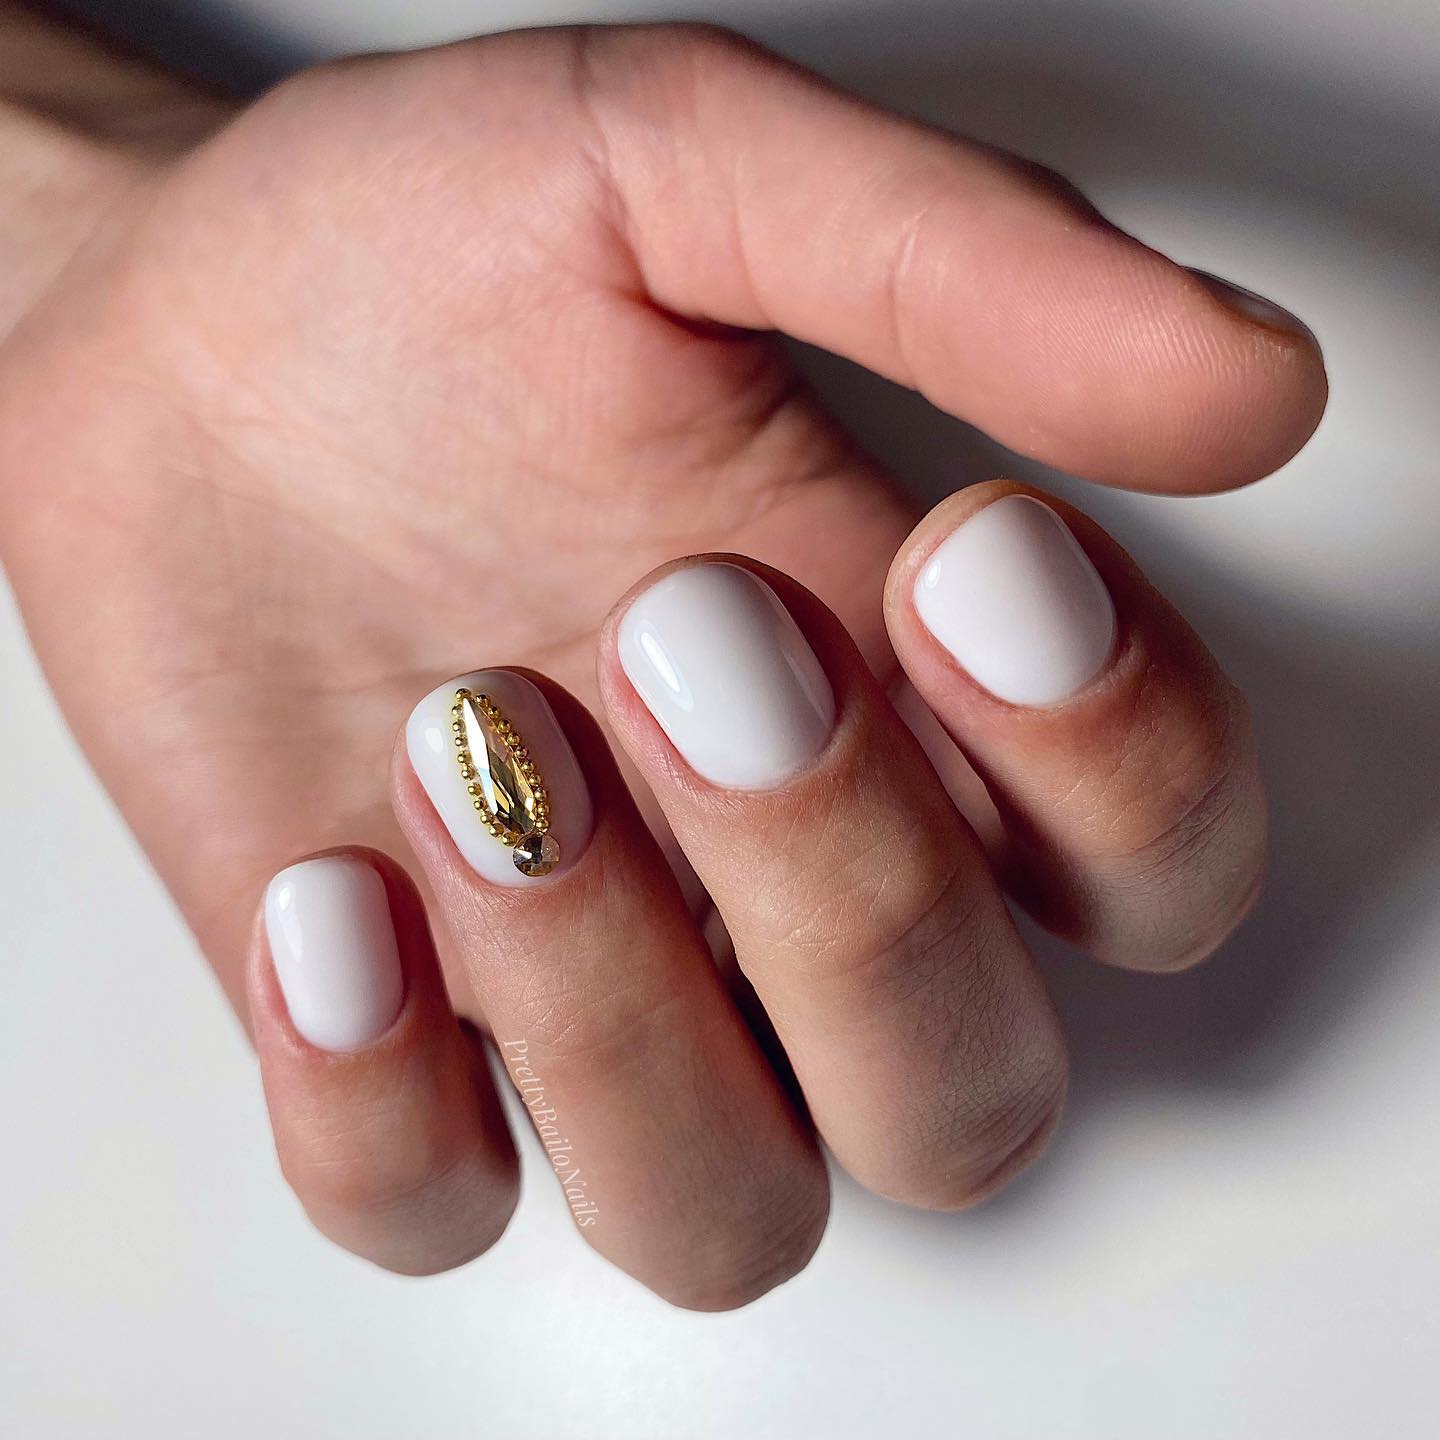 White Nails With Yellow Diamond